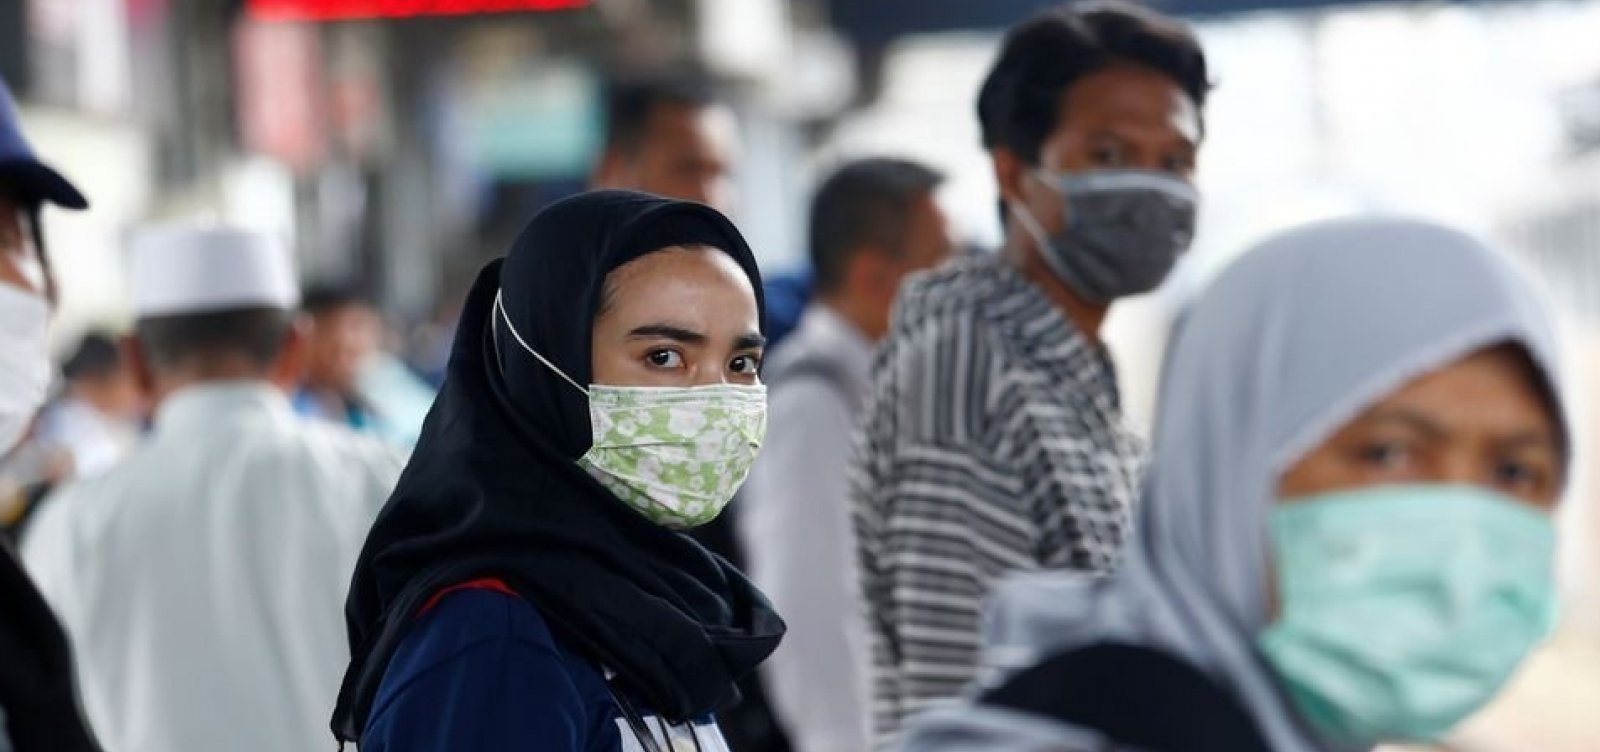 Autoridades de Wuhan, epicentro da pandemia de Covid-19 na China, orientam a ficar em casa